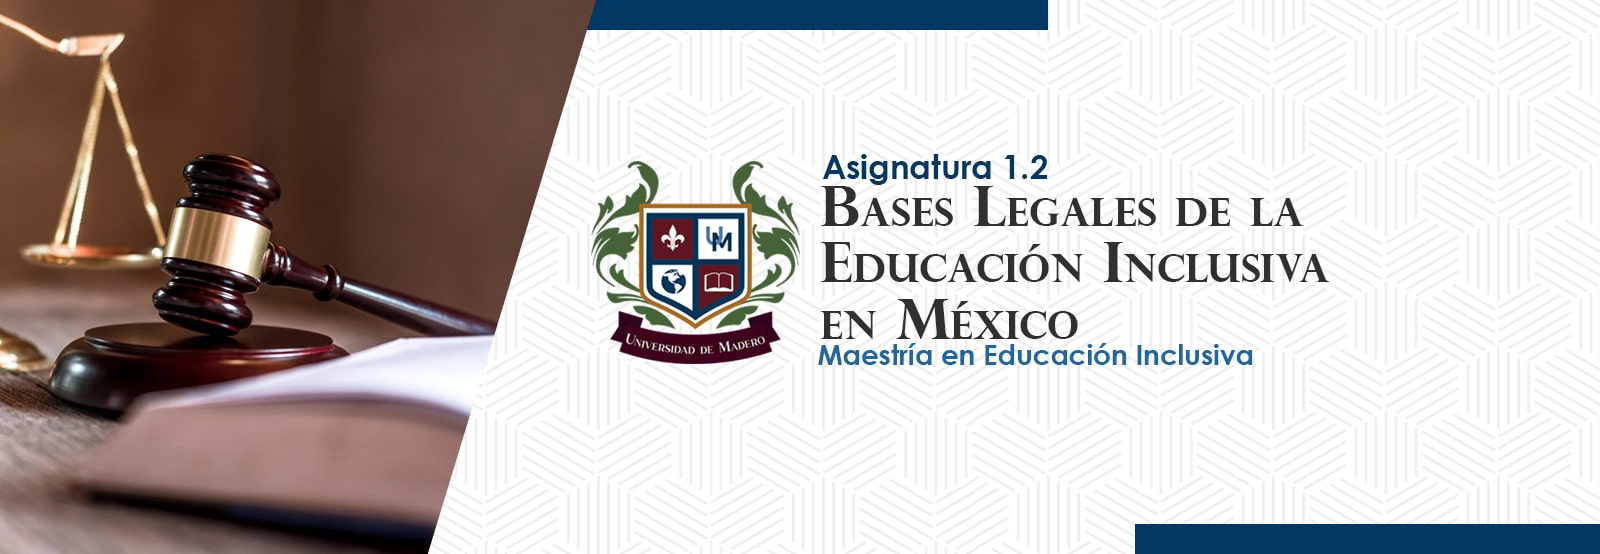 MEI0102 Bases Legales de la Educación Inclusiva en México